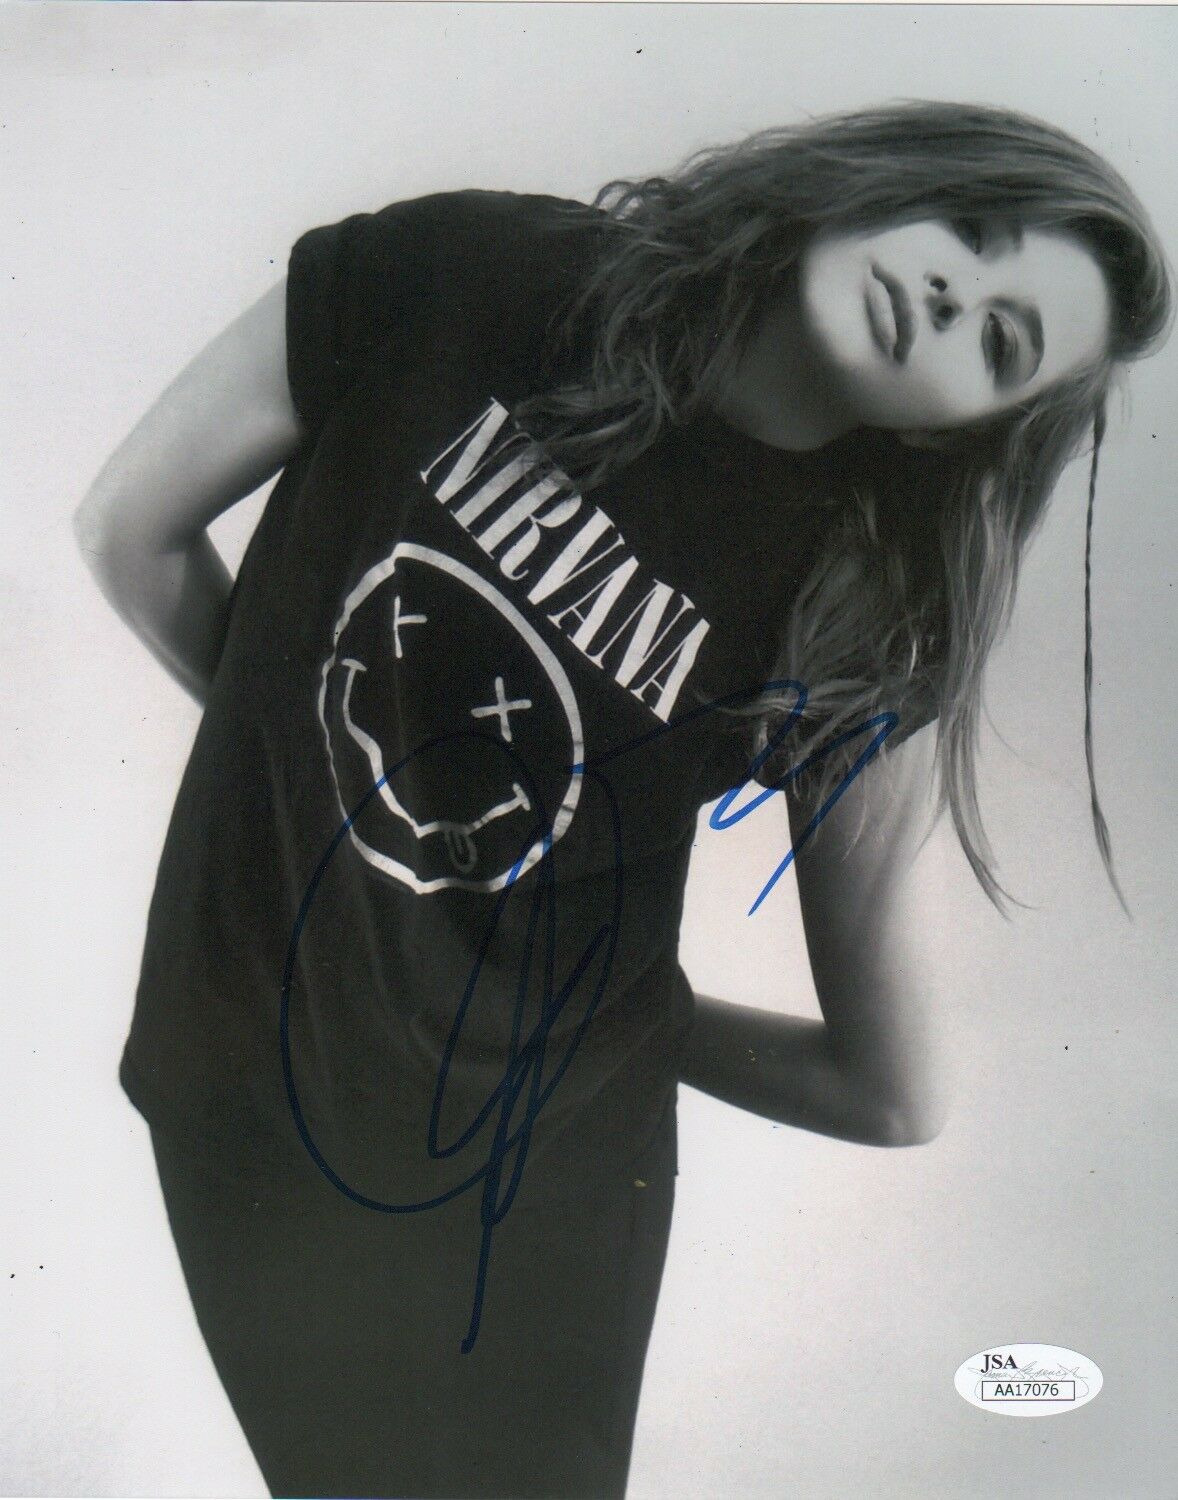 Chloe Moretz Sexy Signed Autograph 8x10 Photo #10 JSA - Outlaw Hobbies Authentic Autographs